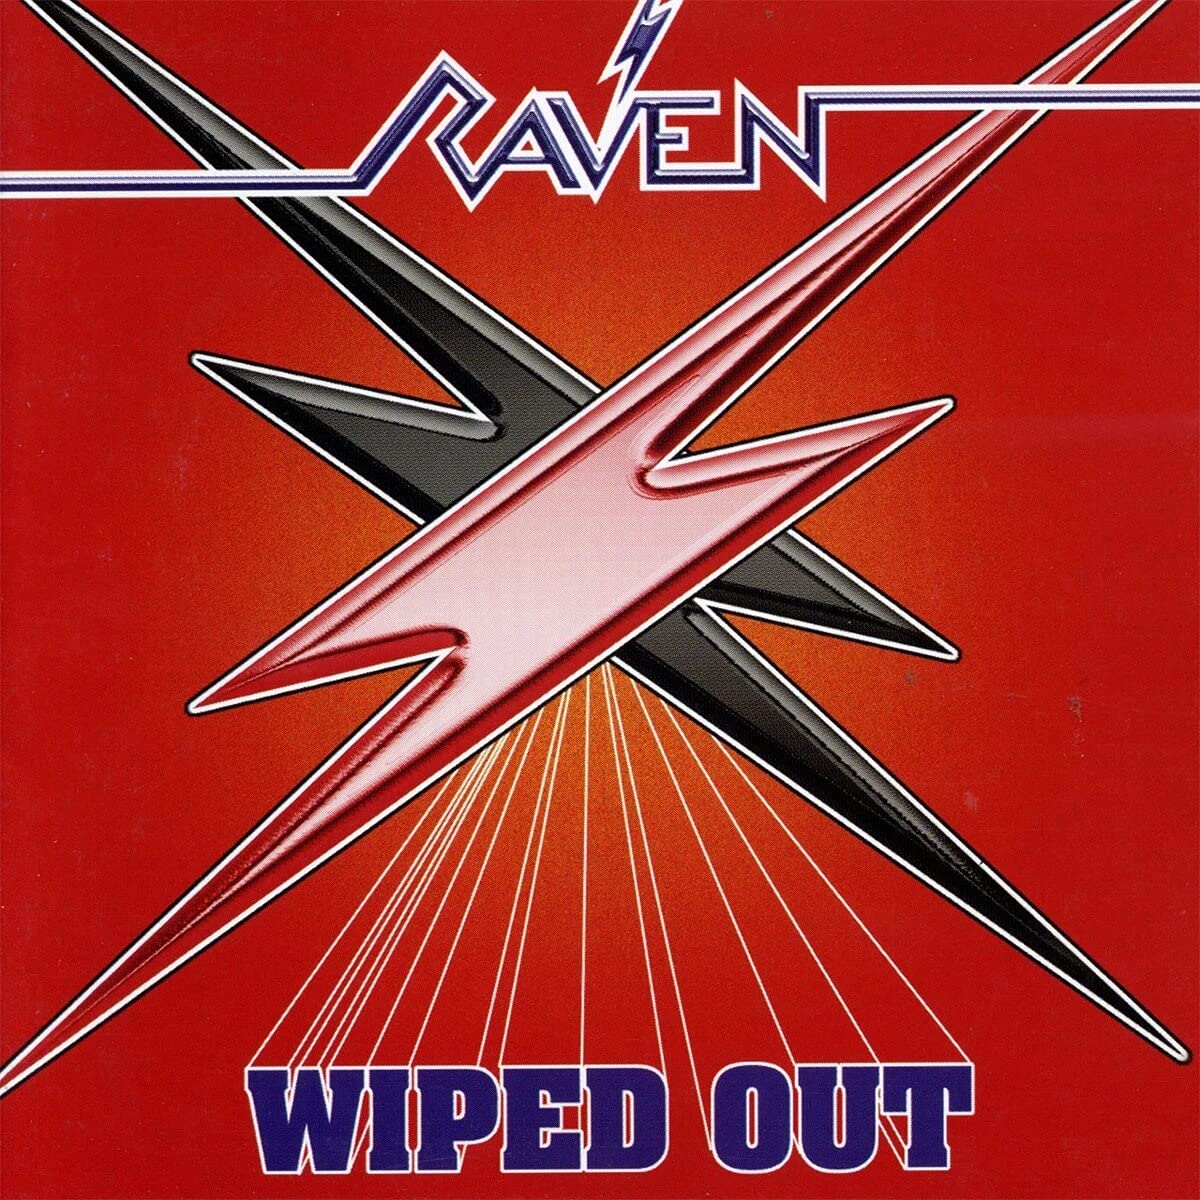 Vinile Raven - Wiped Out (Brown Vinyl +7'') NUOVO SIGILLATO, EDIZIONE DEL 29/10/2021 SUBITO DISPONIBILE